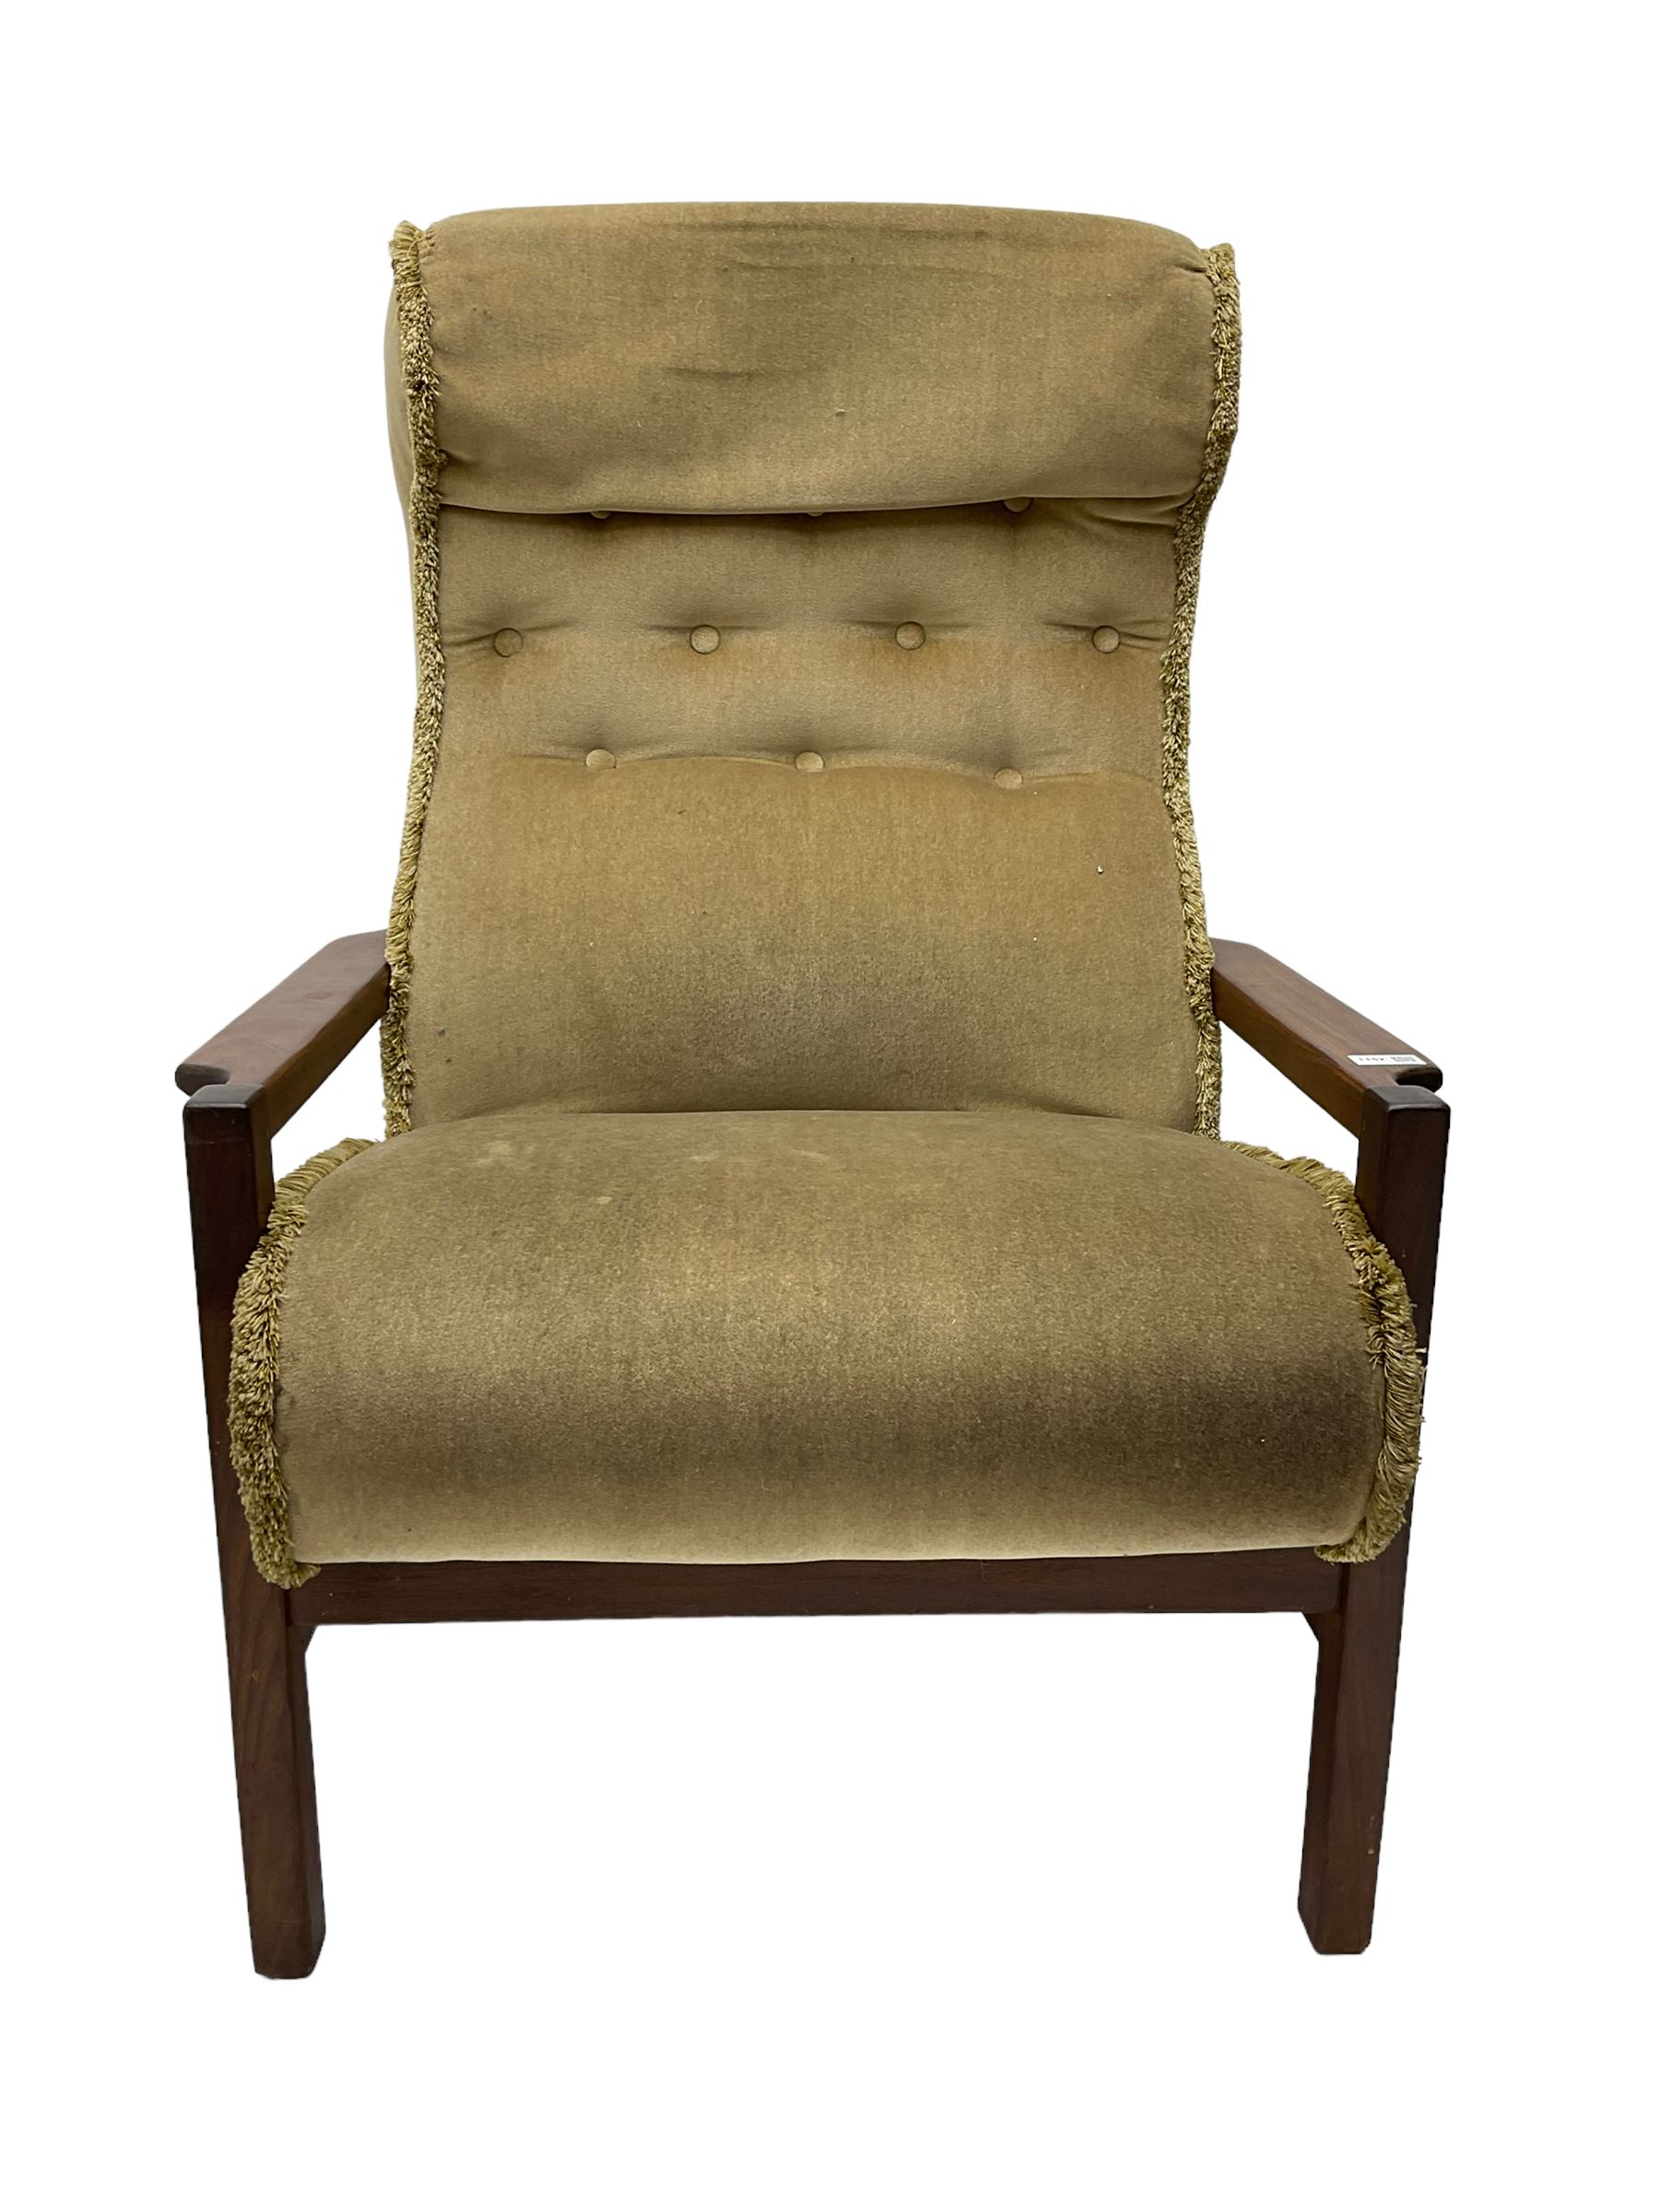 Mid-20th century teak framed upholstered armchair